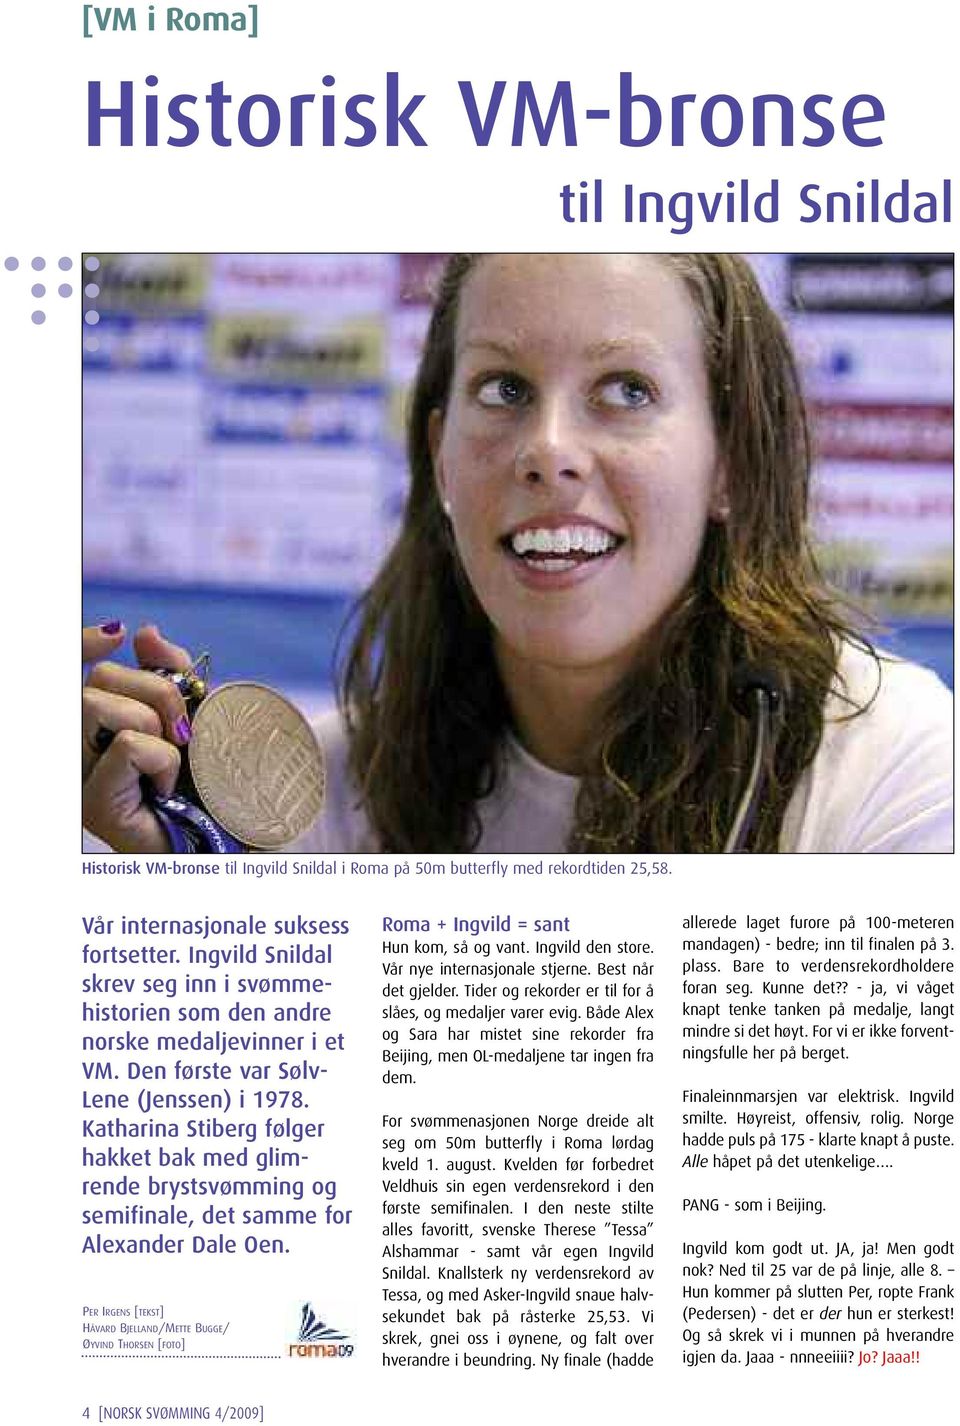 Katharina Stiberg følger hakket bak med glimrende brystsvømming og semifinale, det samme for Alexander Dale Oen.